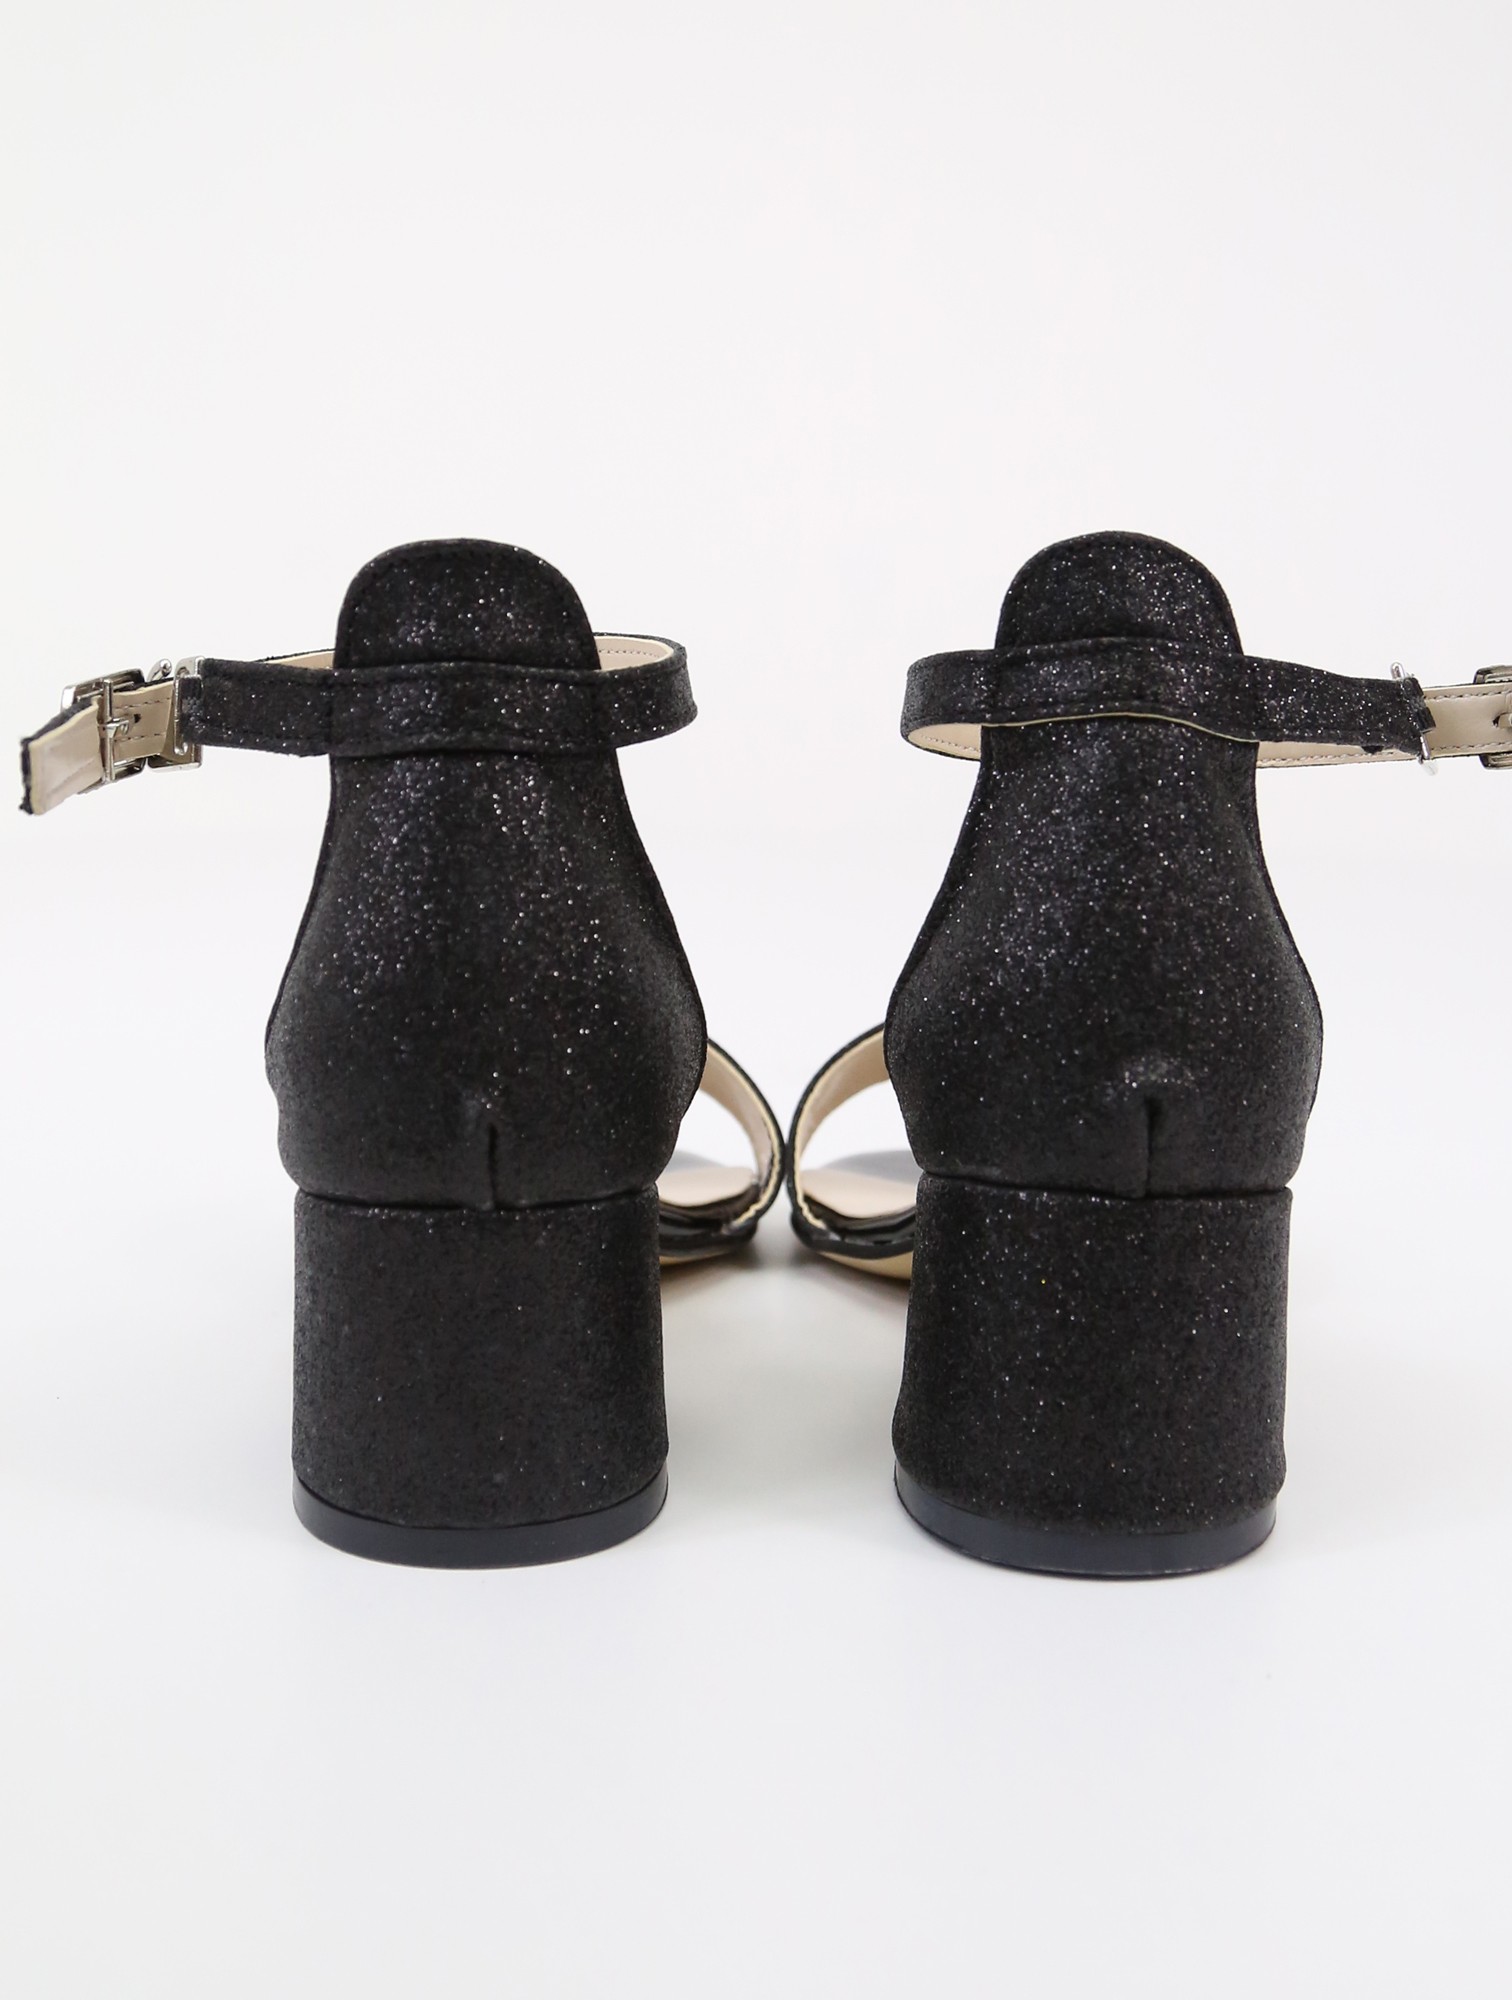 Mädchen Sandalen mit Knöchelriemen und Glitzer, Blockabsatz Schuhe für Besondere Anlässe